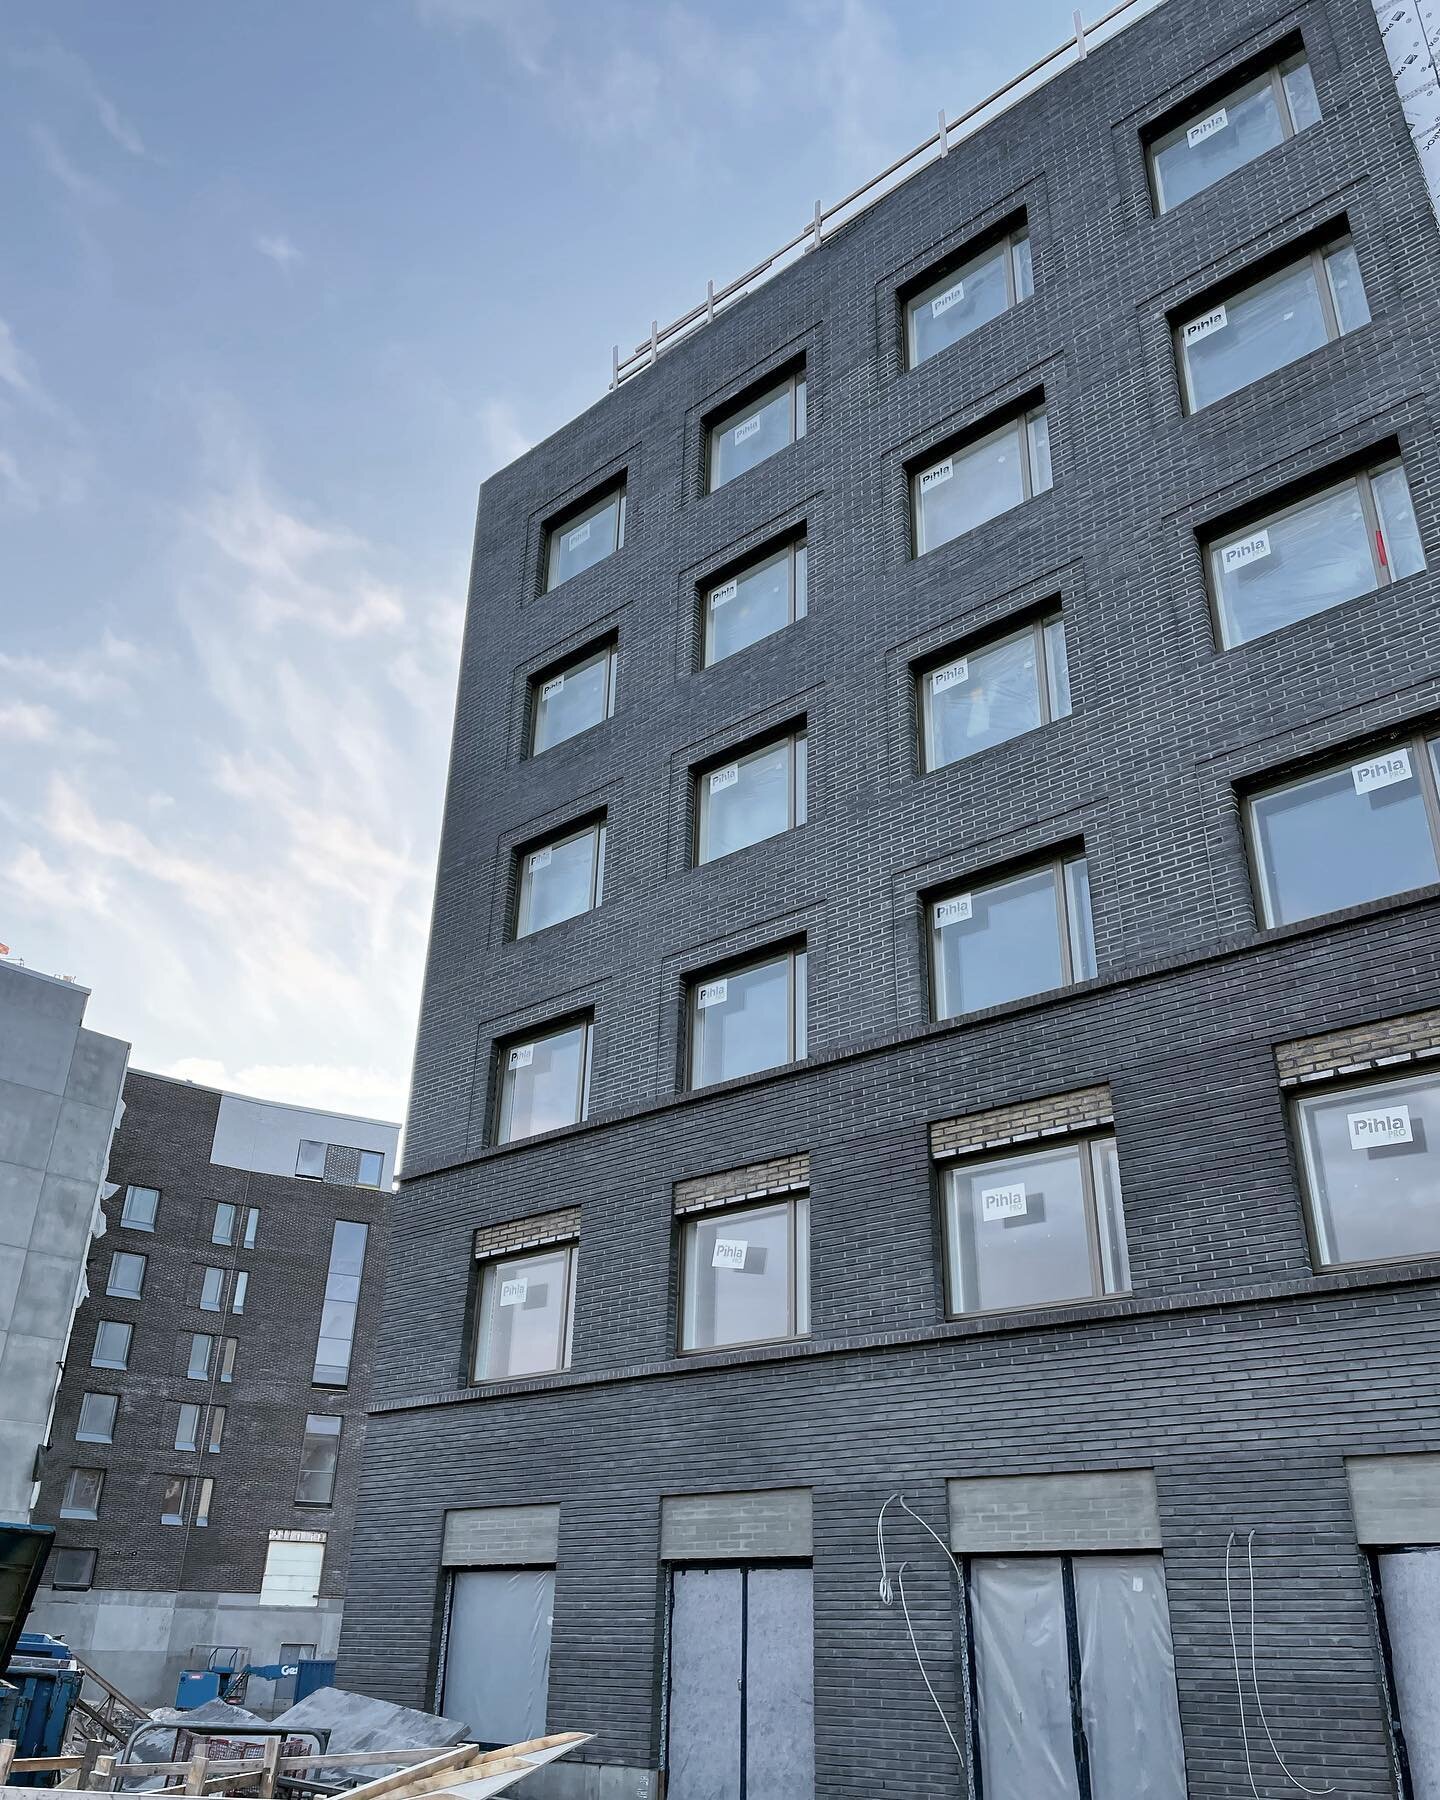 HOAS Vanha Talvitie housing for students in Helsinki, Verkkosaari
@tienoarkkitehdit @hoas_fi 
.
.
.
Beautiful brick facade from @wienerbergerfinland 
#architecture #archdaily #archilovers #architexture #arkitecture_details #arkitektur #brick #housing